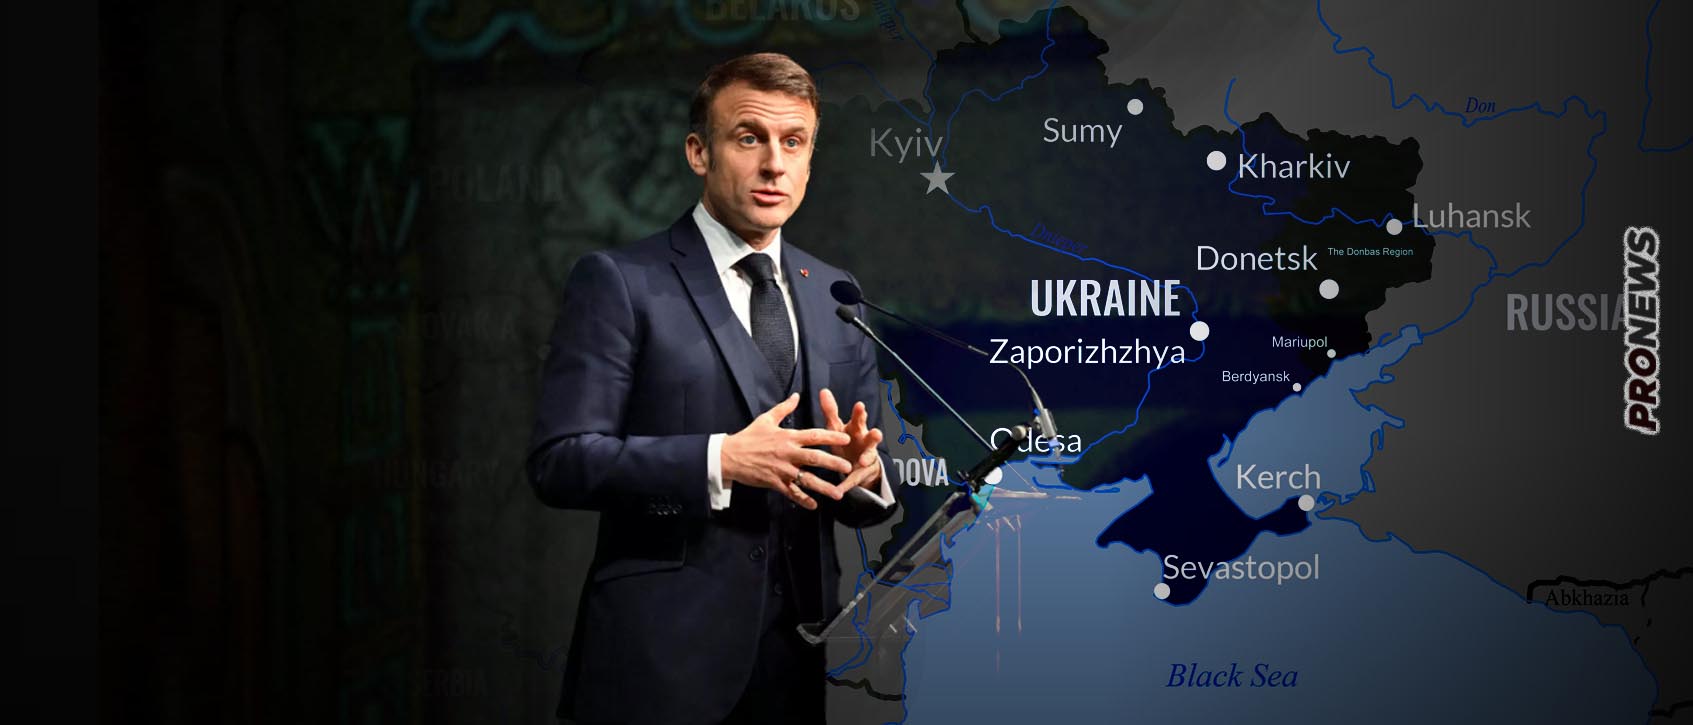 O Ε.Μακρόν σέρνει την Ευρώπη στην άβυσσο του πολέμου της Ουκρανίας: «Δεν πρέπει να είμαστε δειλοί – Να πολεμήσουμε»